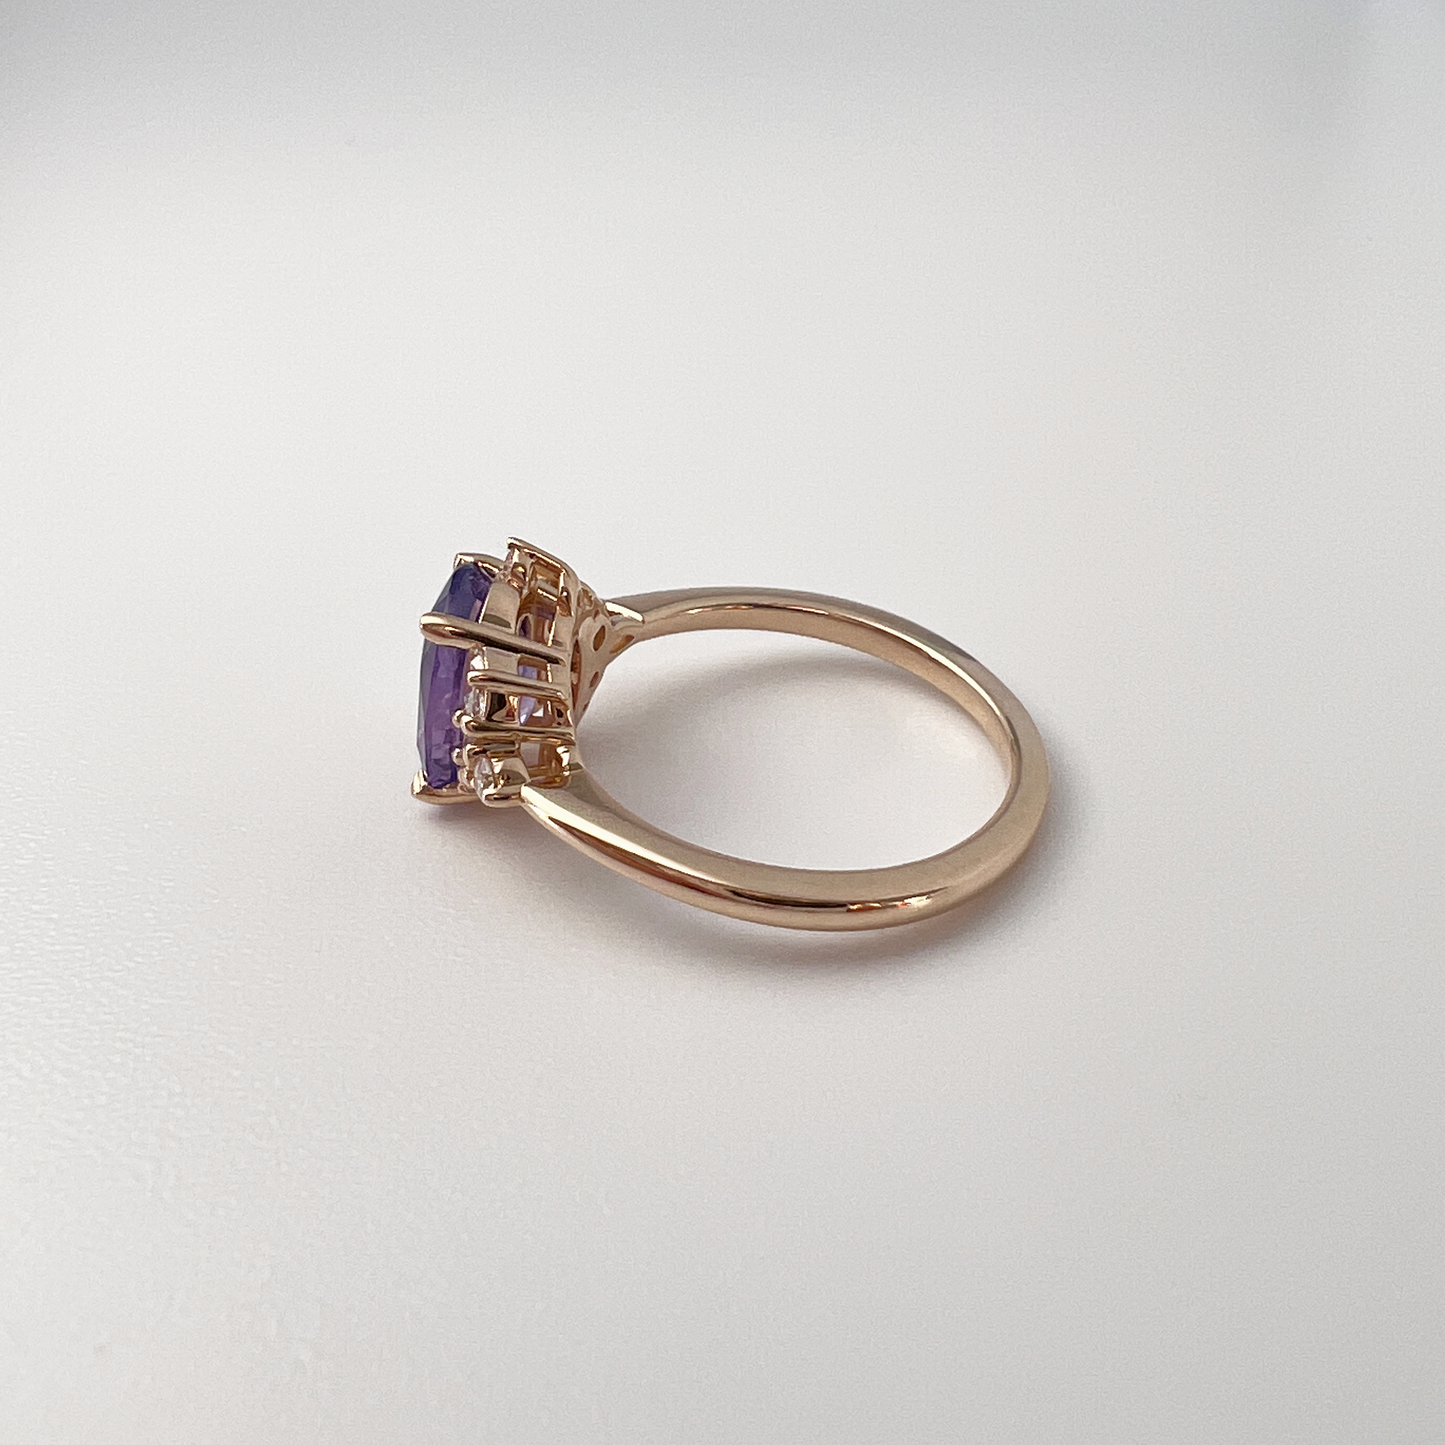 Bague asymétrique unique avec saphir violet et diamants